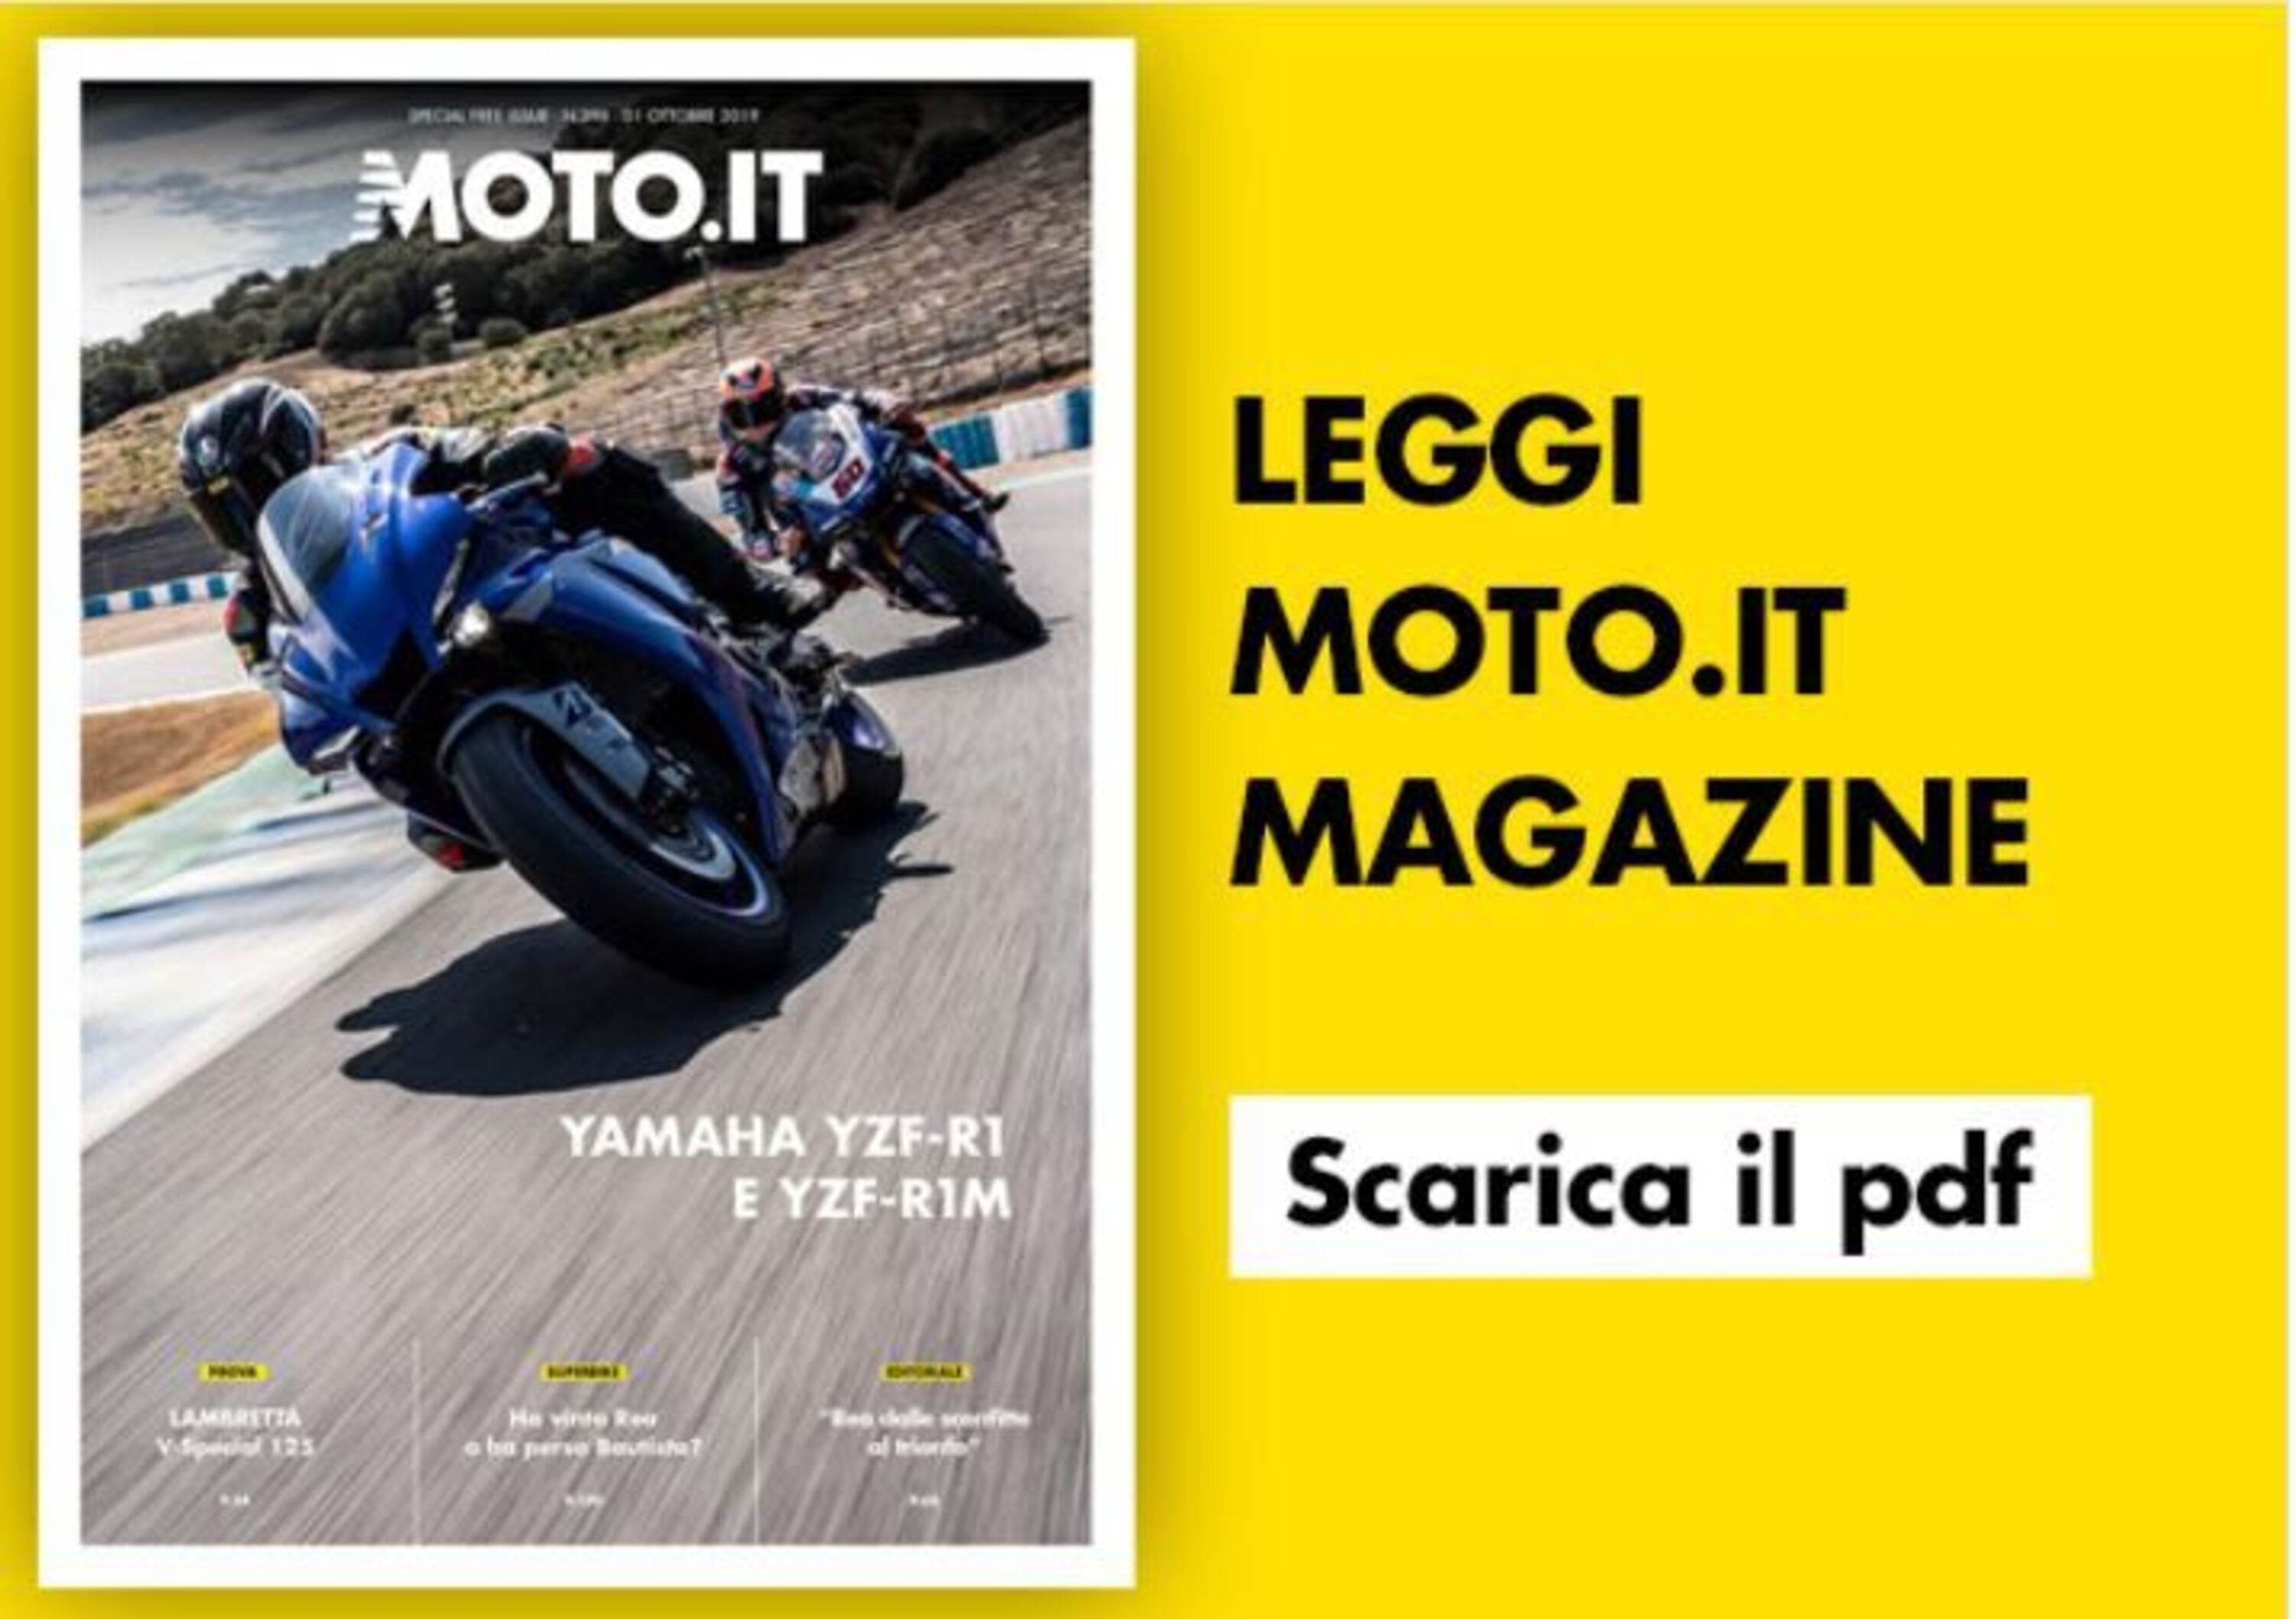 Magazine n&deg; 396, scarica e leggi il meglio di Moto.it 